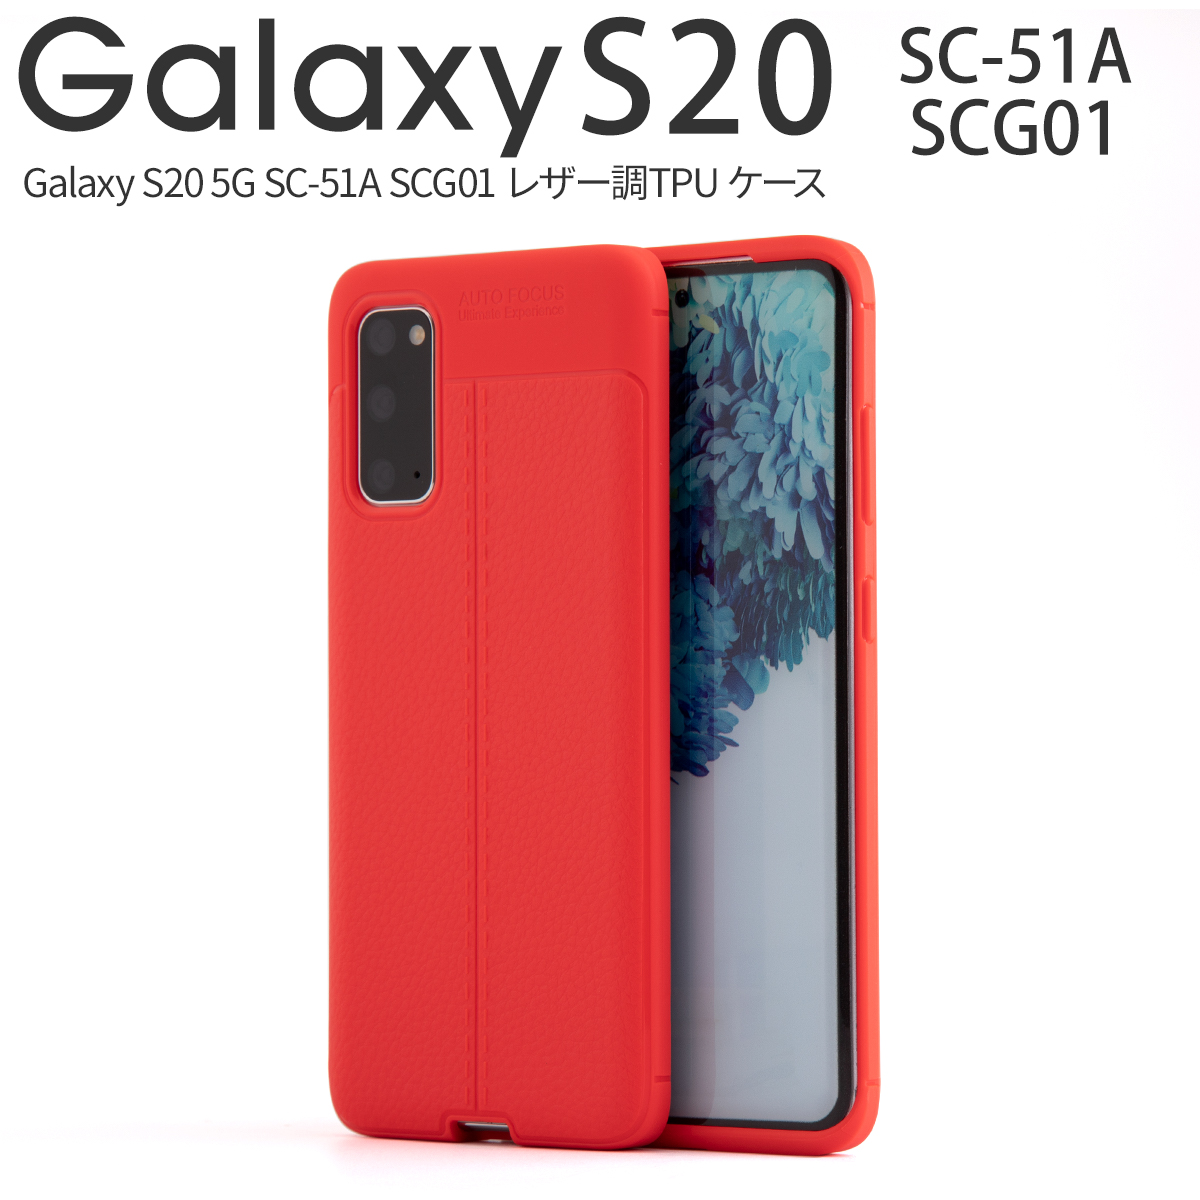 Galaxy S20 5G SC-51A SCG01 レザー調TPUケース|スマホケース卸問屋